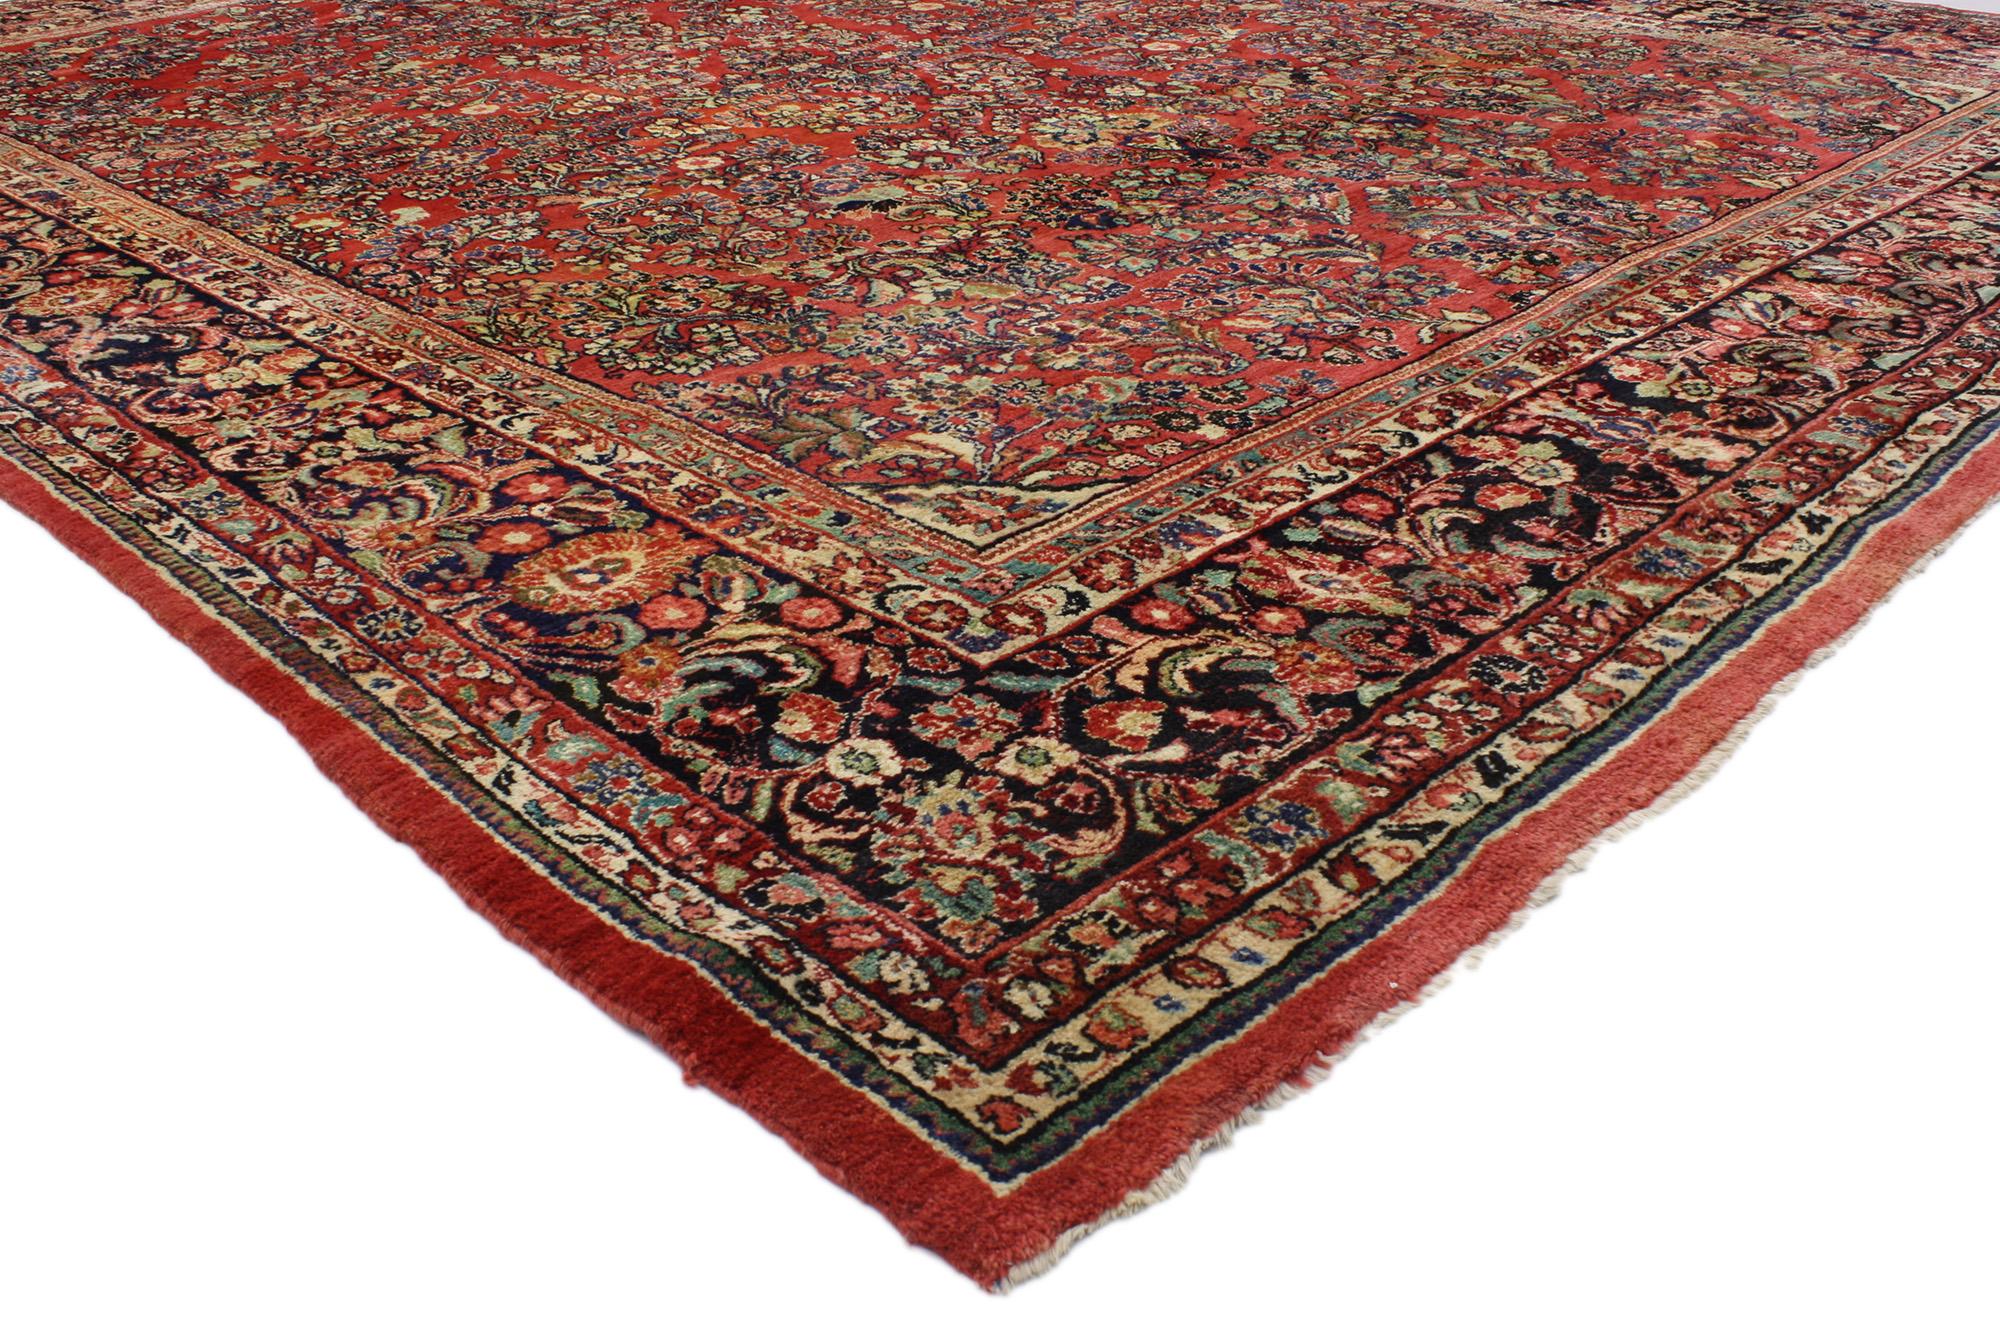 76865, antiker persischer Sarouk-Teppich mit Jugendstilelementen. Dieser sehr begehrte antike persische Sarouk-Teppich im Jugendstil zeichnet sich durch ein beeindruckendes florales Allover-Muster aus, das in einer reichen Farbpalette gehalten ist